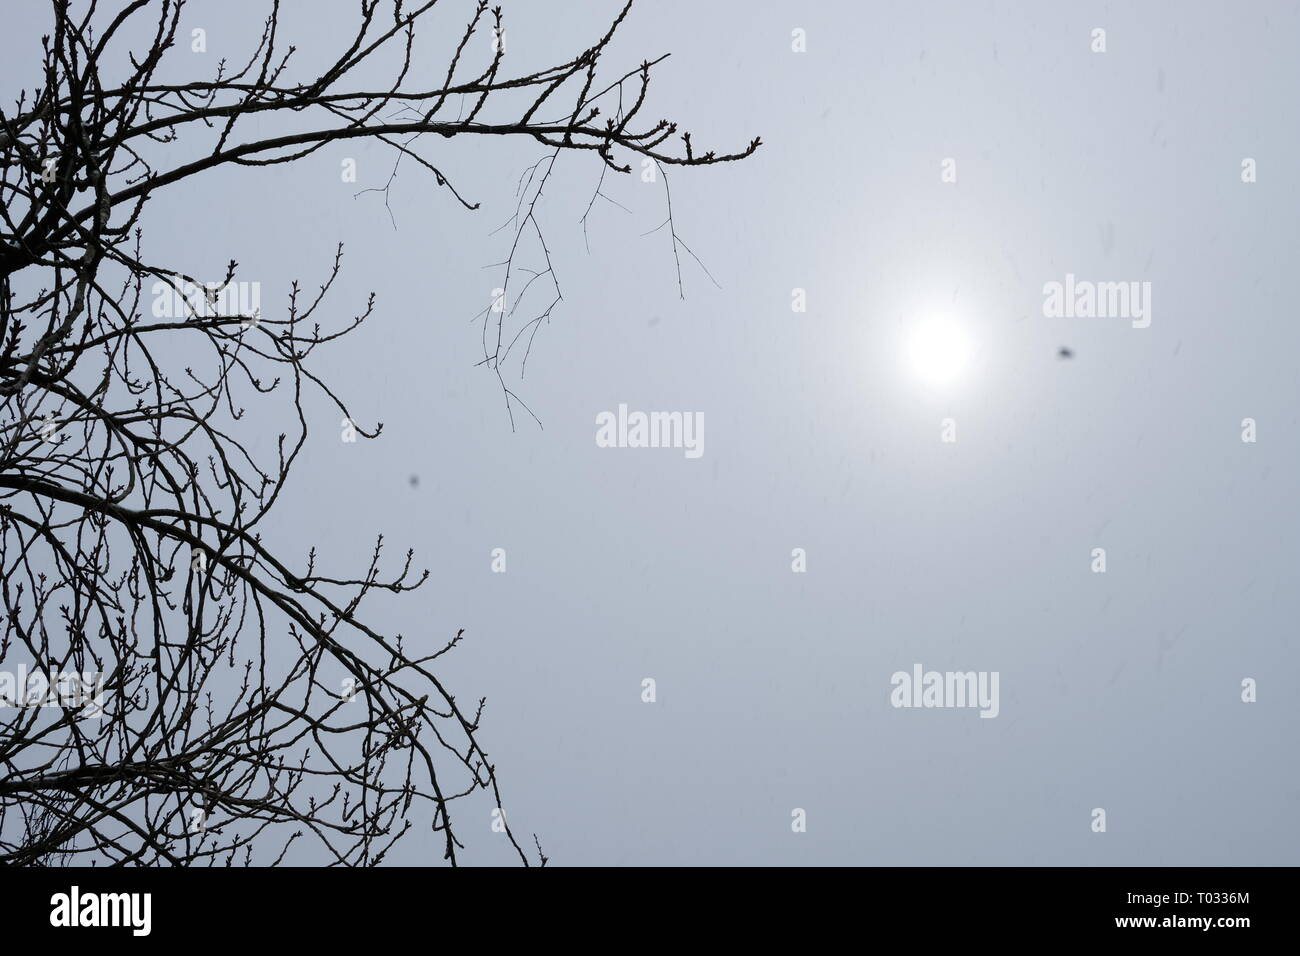 La silhouette della struttura ad albero sulla neve eclipse sfondo.Lilla serenità Foto Stock